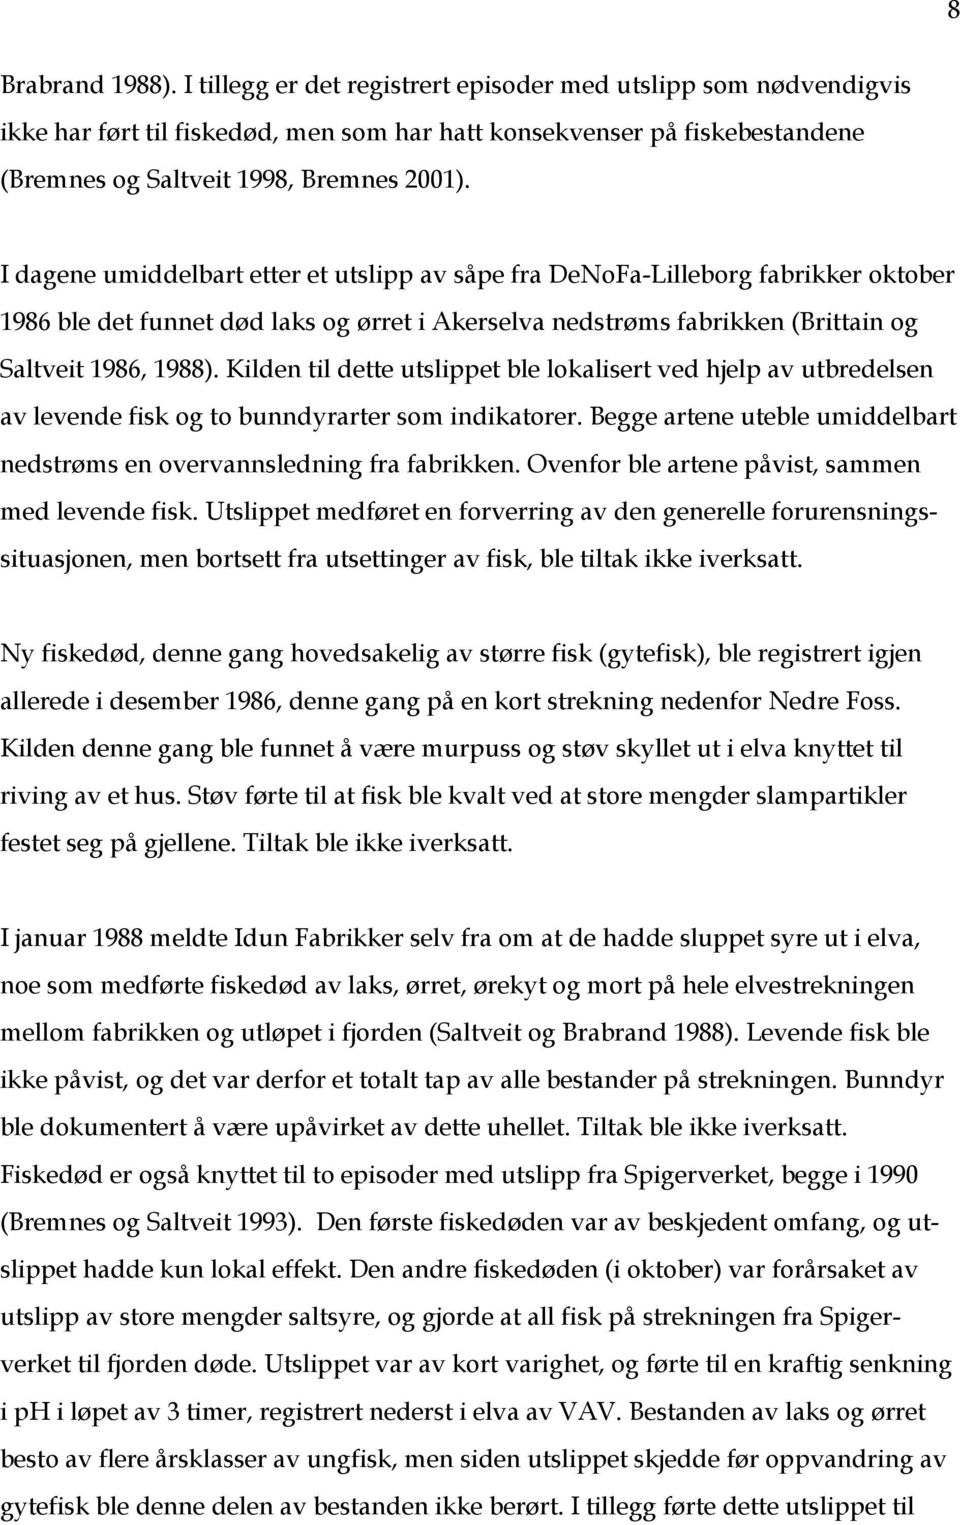 I dagene umiddelbart etter et utslipp av såpe fra DeNoFa-Lilleborg fabrikker oktober 1986 ble det funnet død laks og ørret i Akerselva nedstrøms fabrikken (Brittain og Saltveit 1986, 1988).